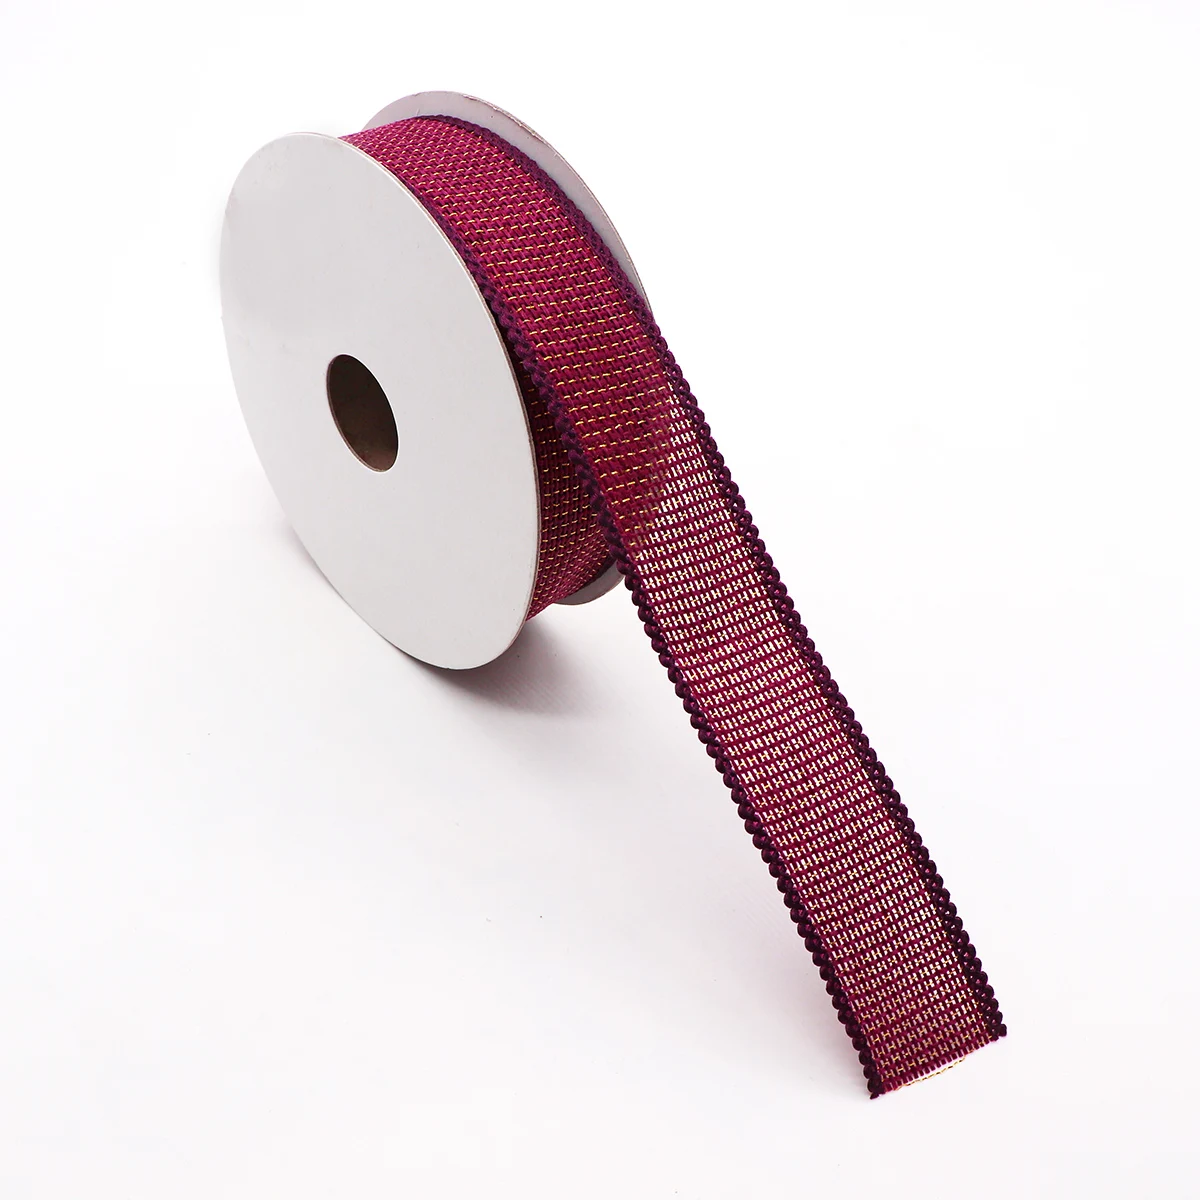 25 мм 5 м только для вас печатная полиэфирная лента для свадьбы рождественской вечеринки украшения DIY лук ленты для поделок открытки подарочная упаковка - Цвет: 11